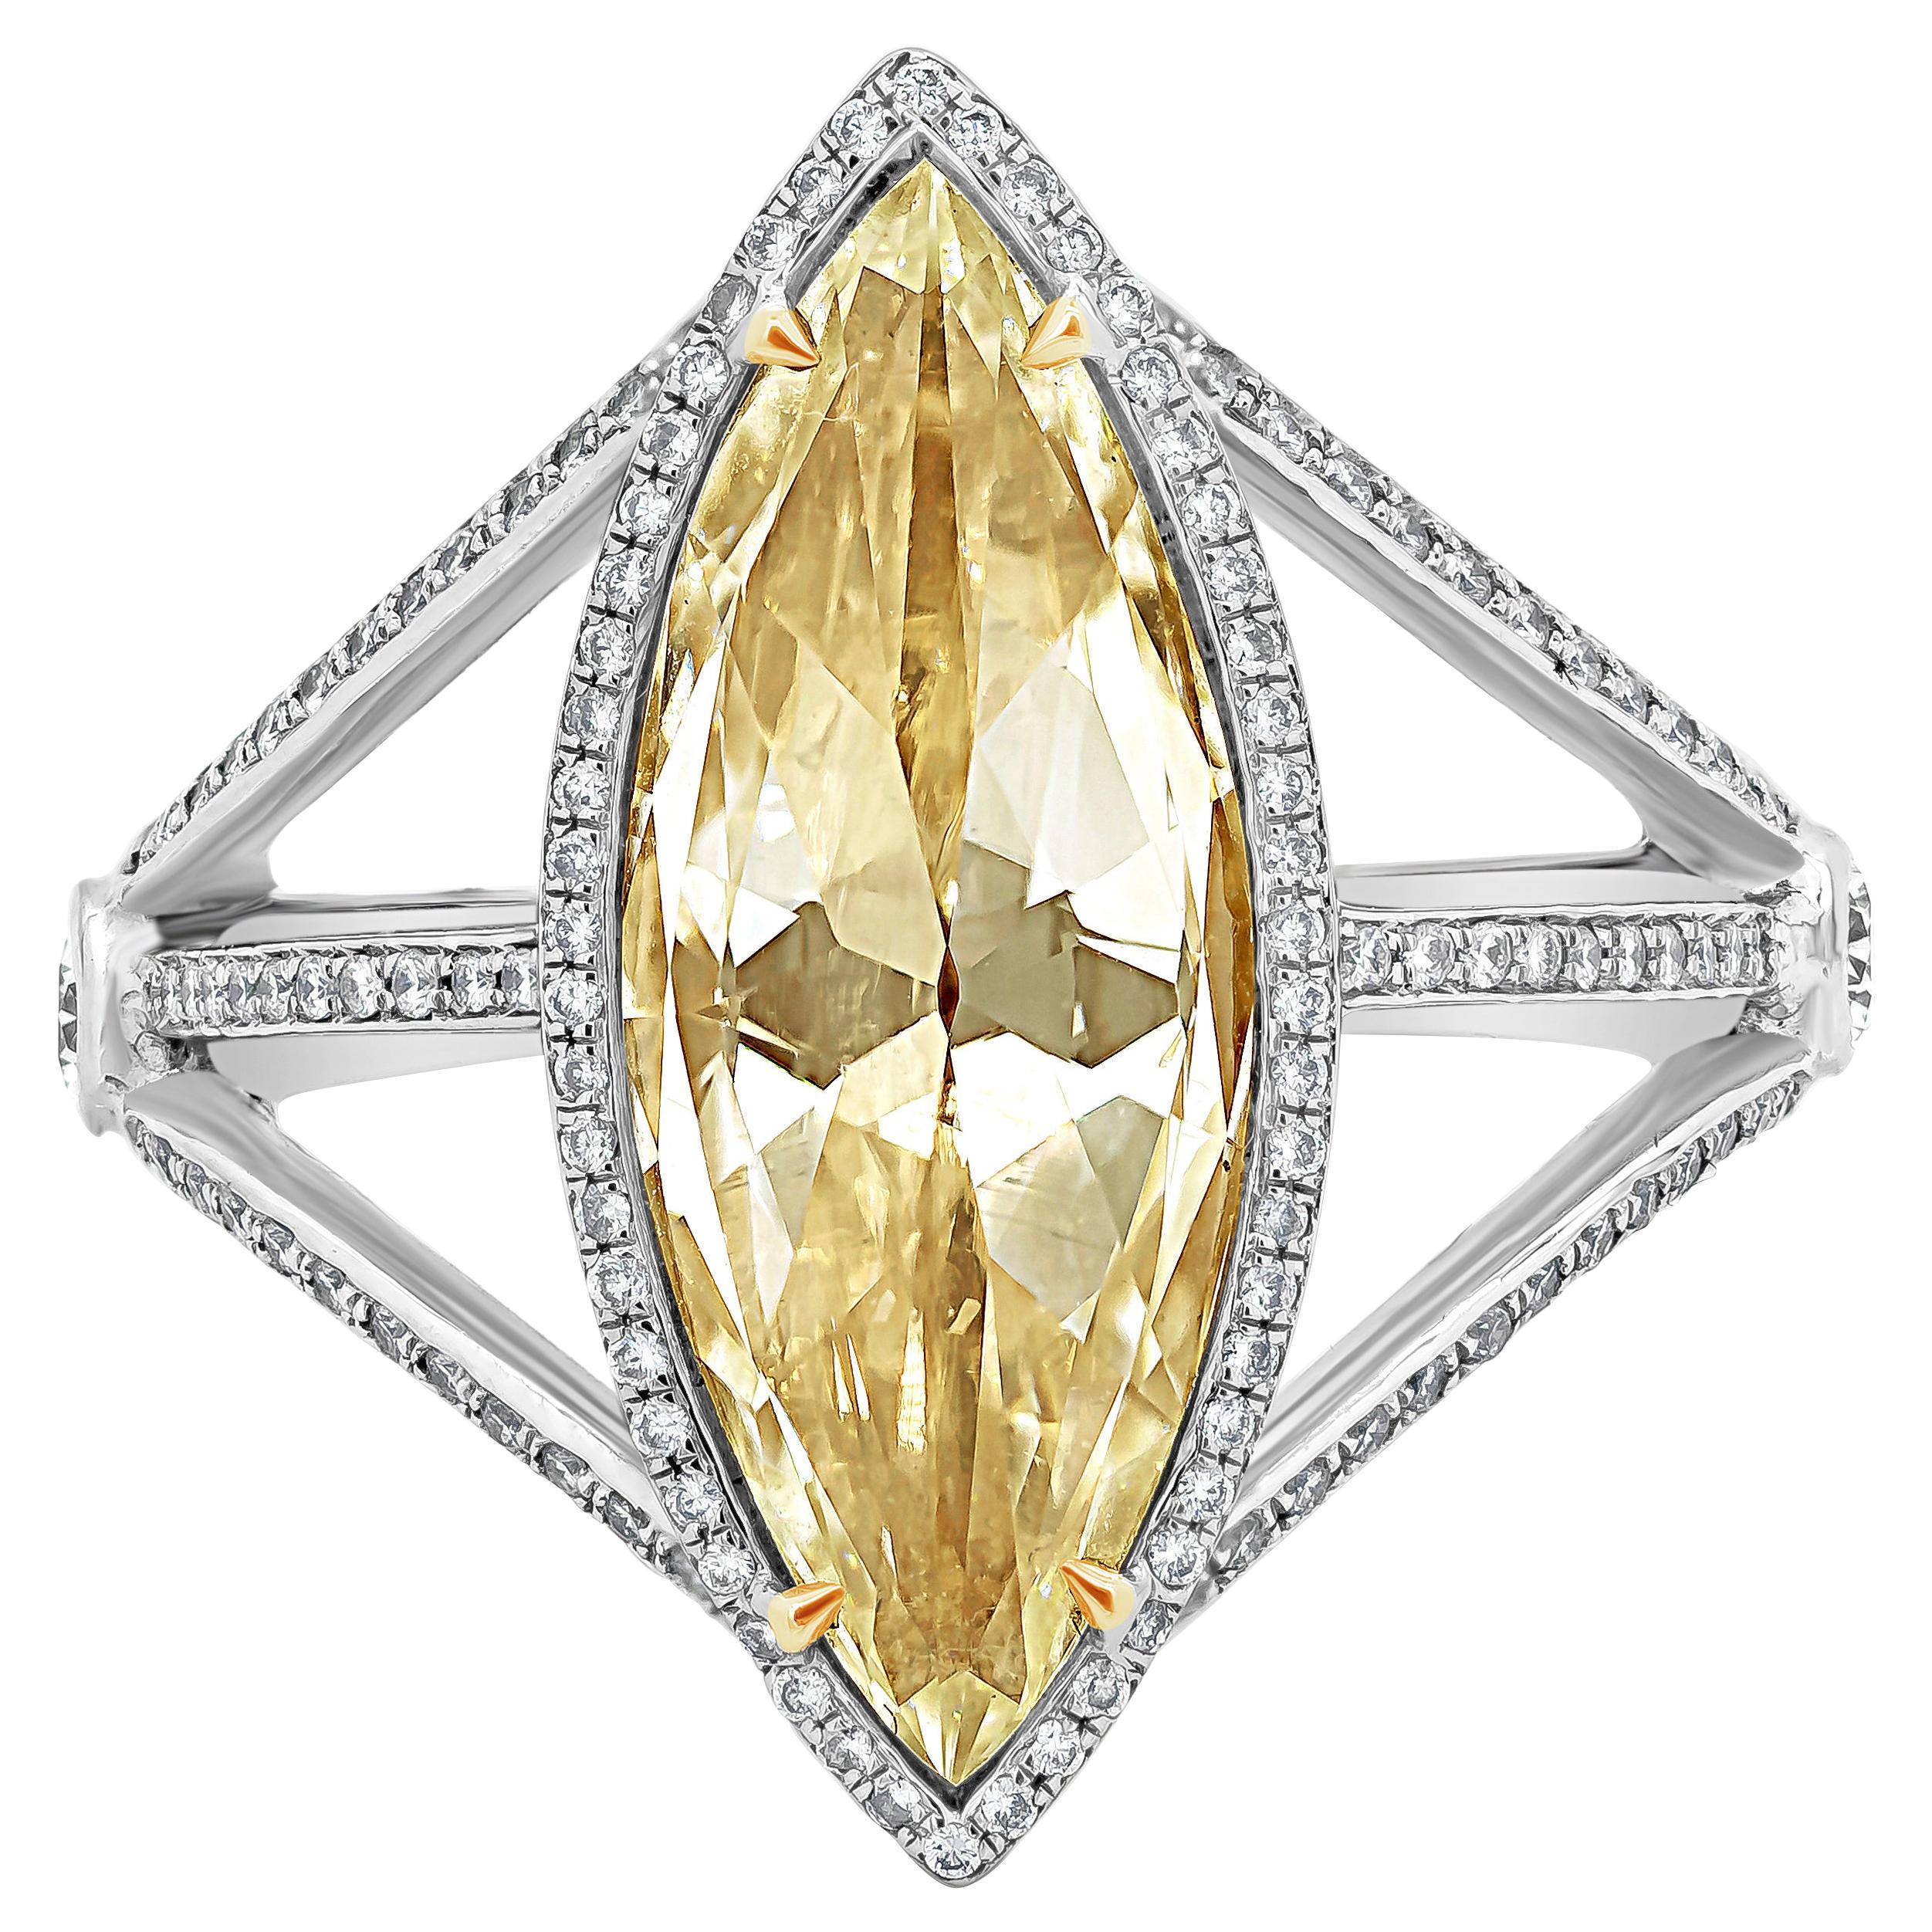 Roman Malakov Bague de fiançailles avec diamant jauneâtre taille rose de 3,58 carats